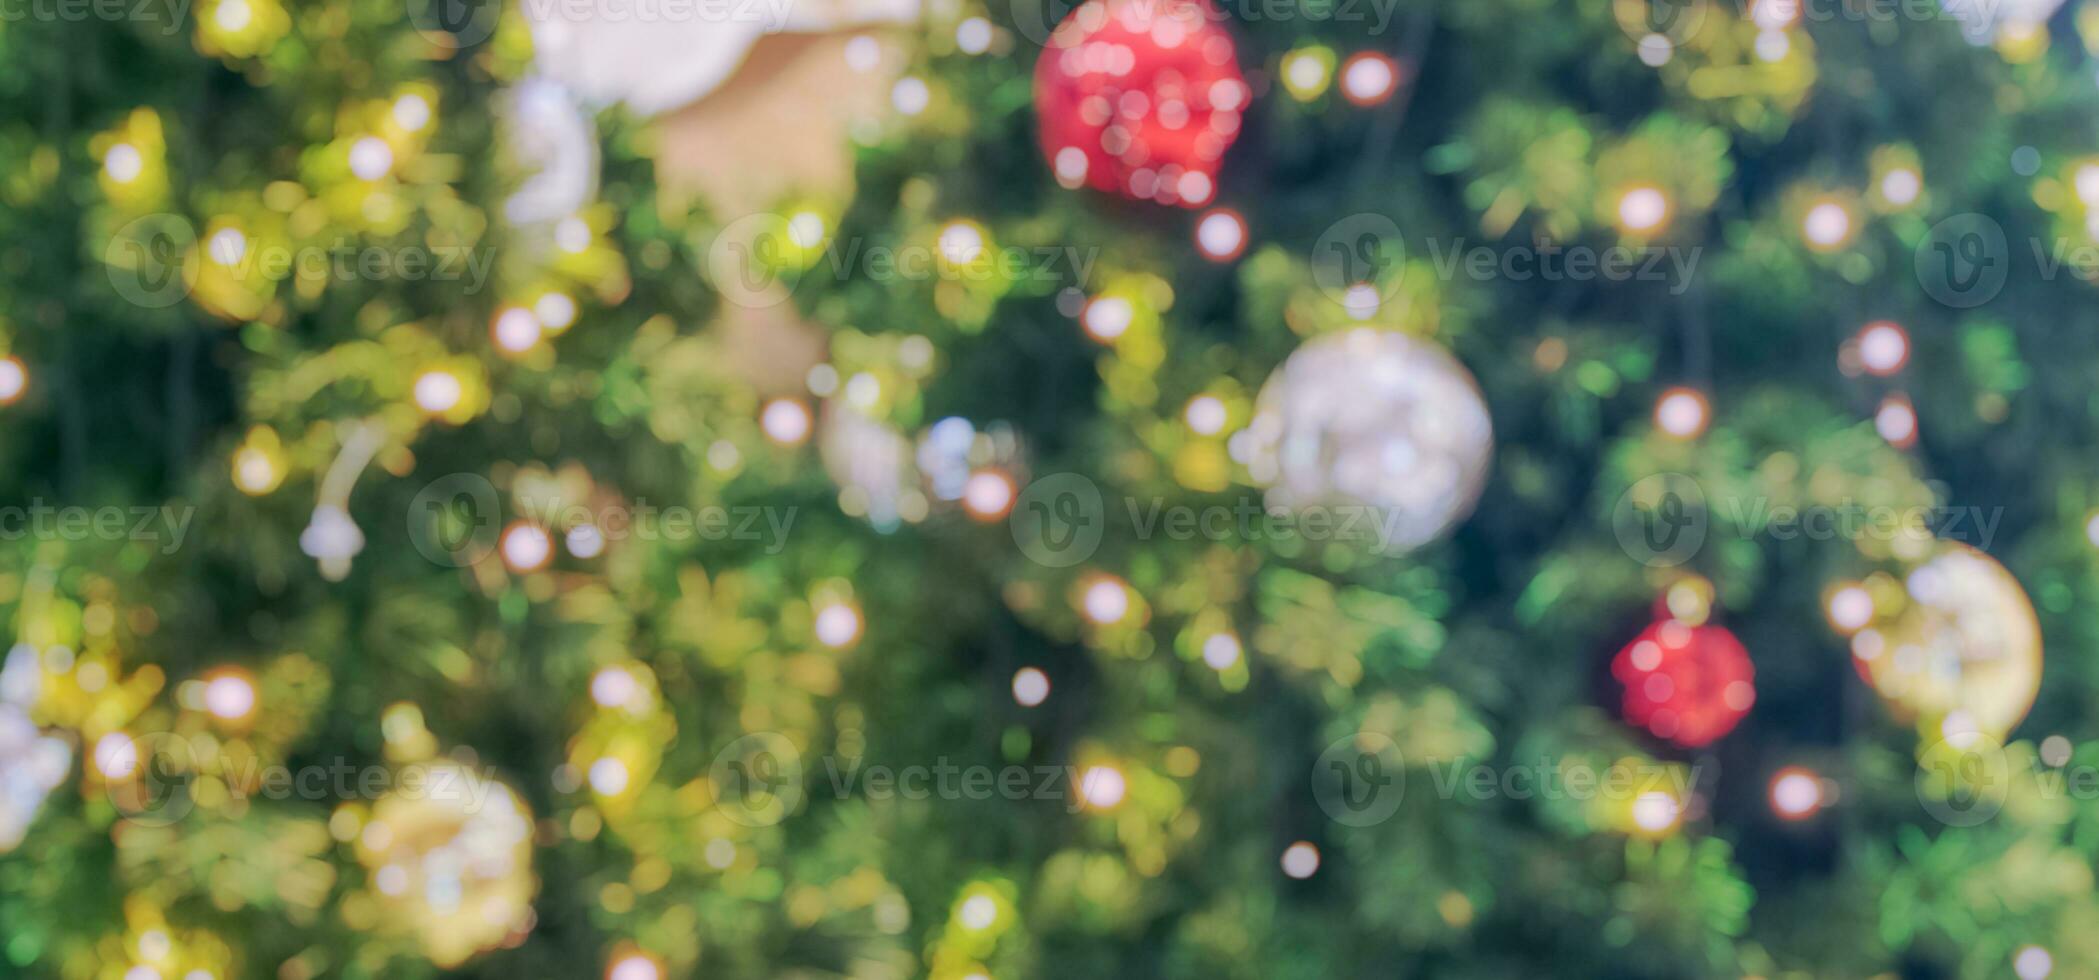 abstrakter unscharfer weihnachtsbaum mit bokeh hellem hintergrund foto